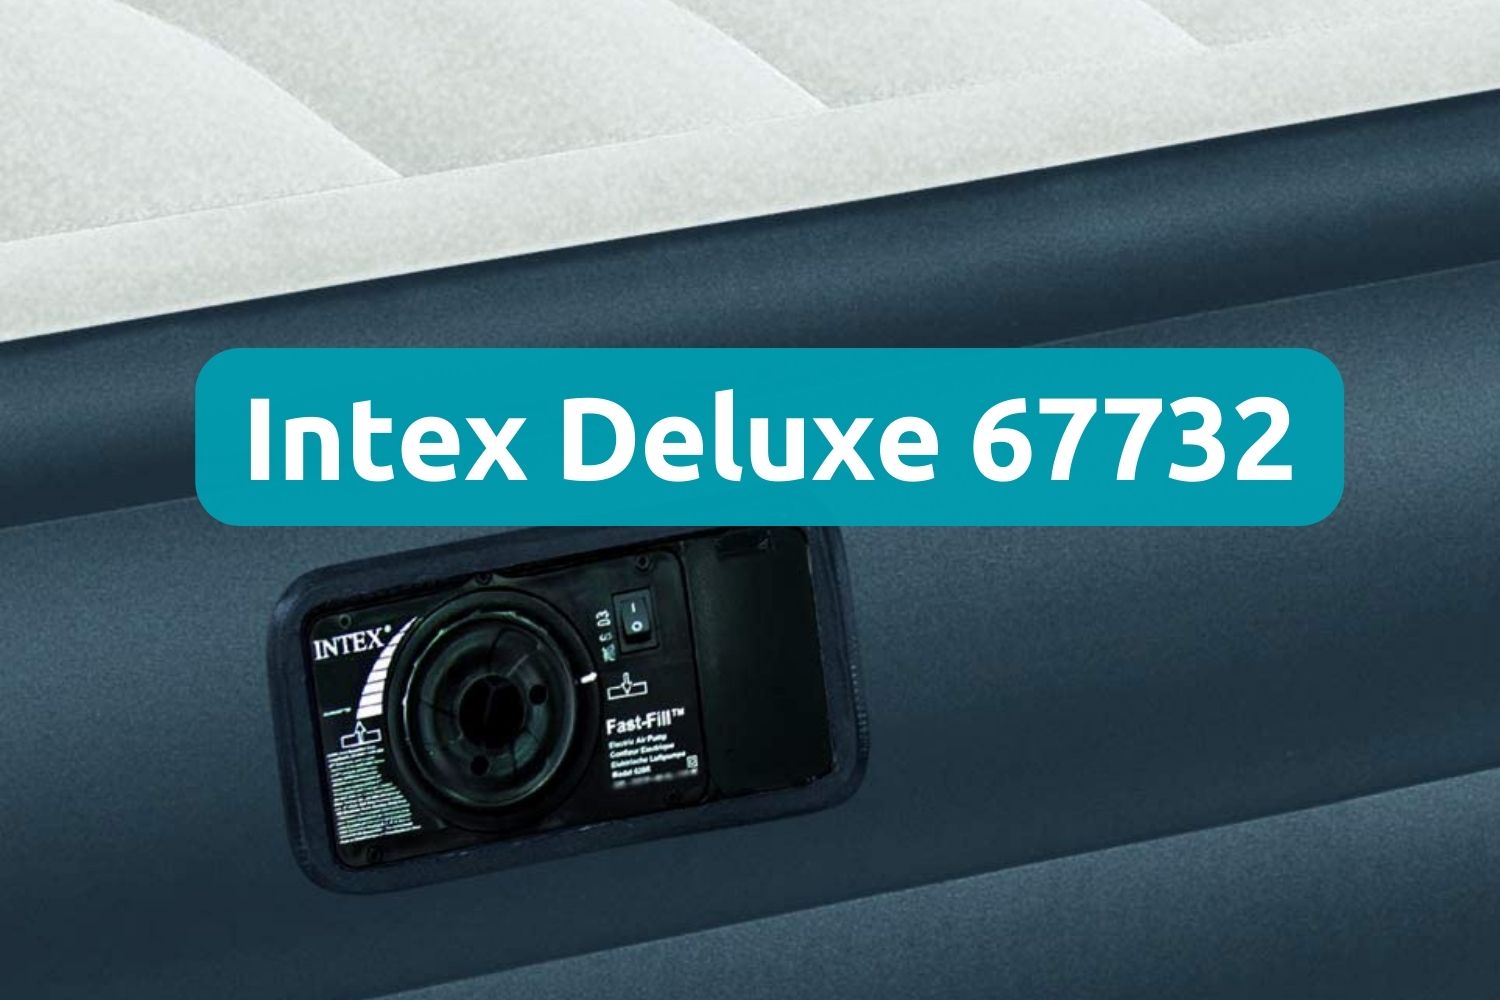 Intex Deluxe 67732